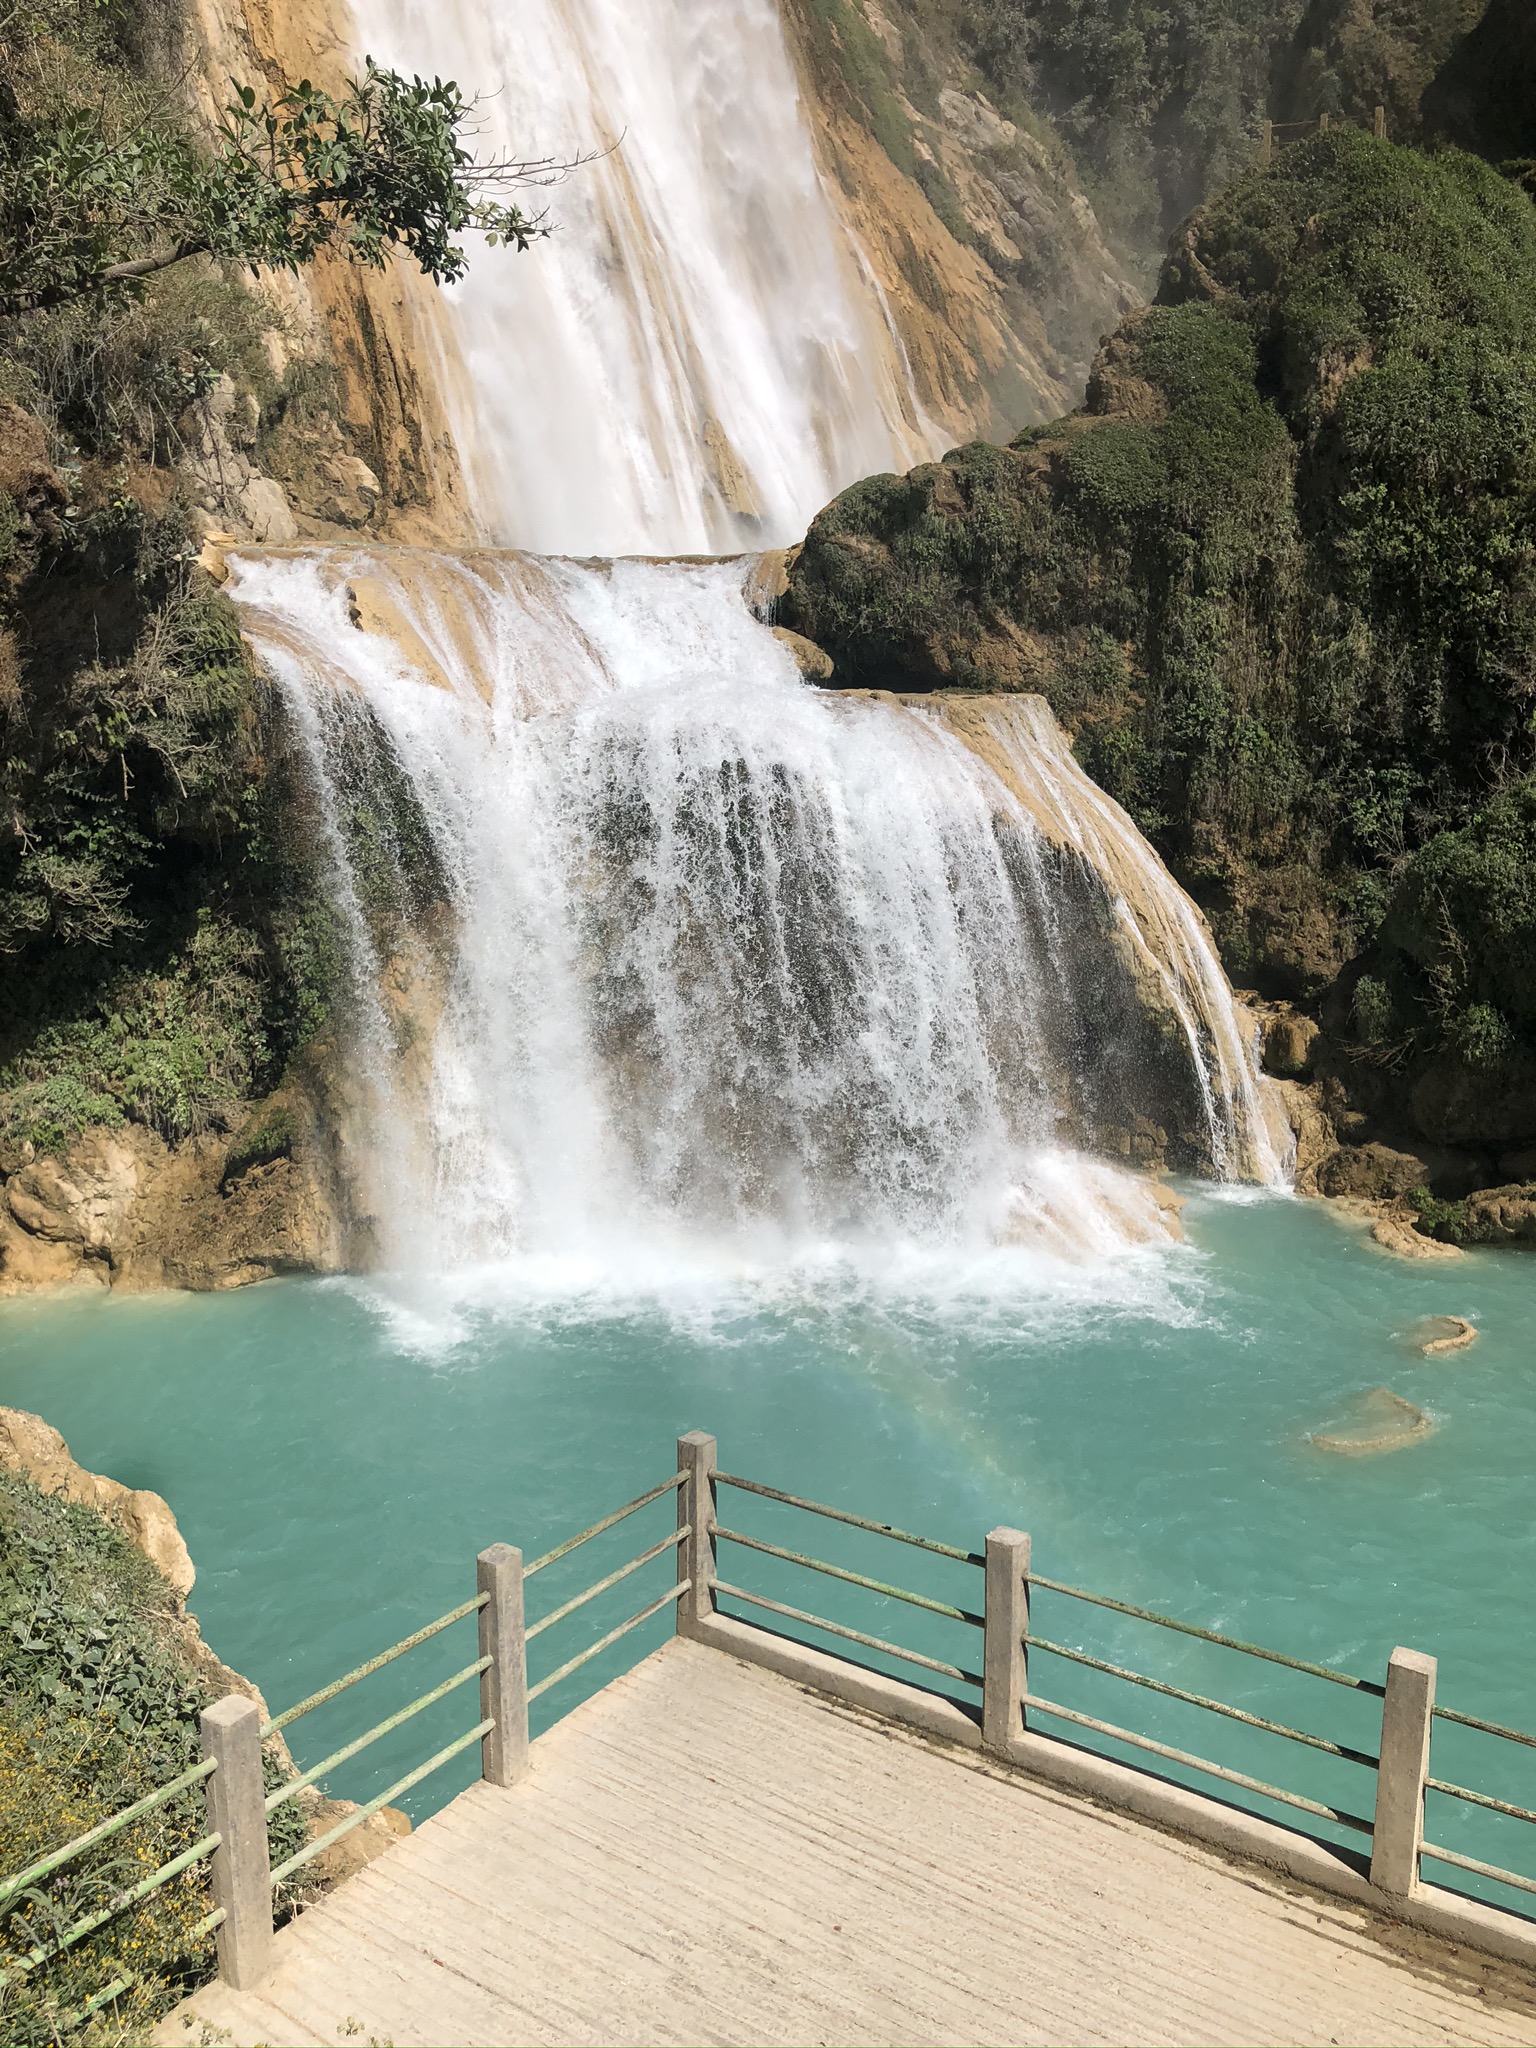 高さ1mの滝から形成されるその川は美しいエメラルドグリーン メキシコのチアパス州のカスカダ エル チフロンの滝が迫力満載 駐在員のブログ Expatriate Employee Blog